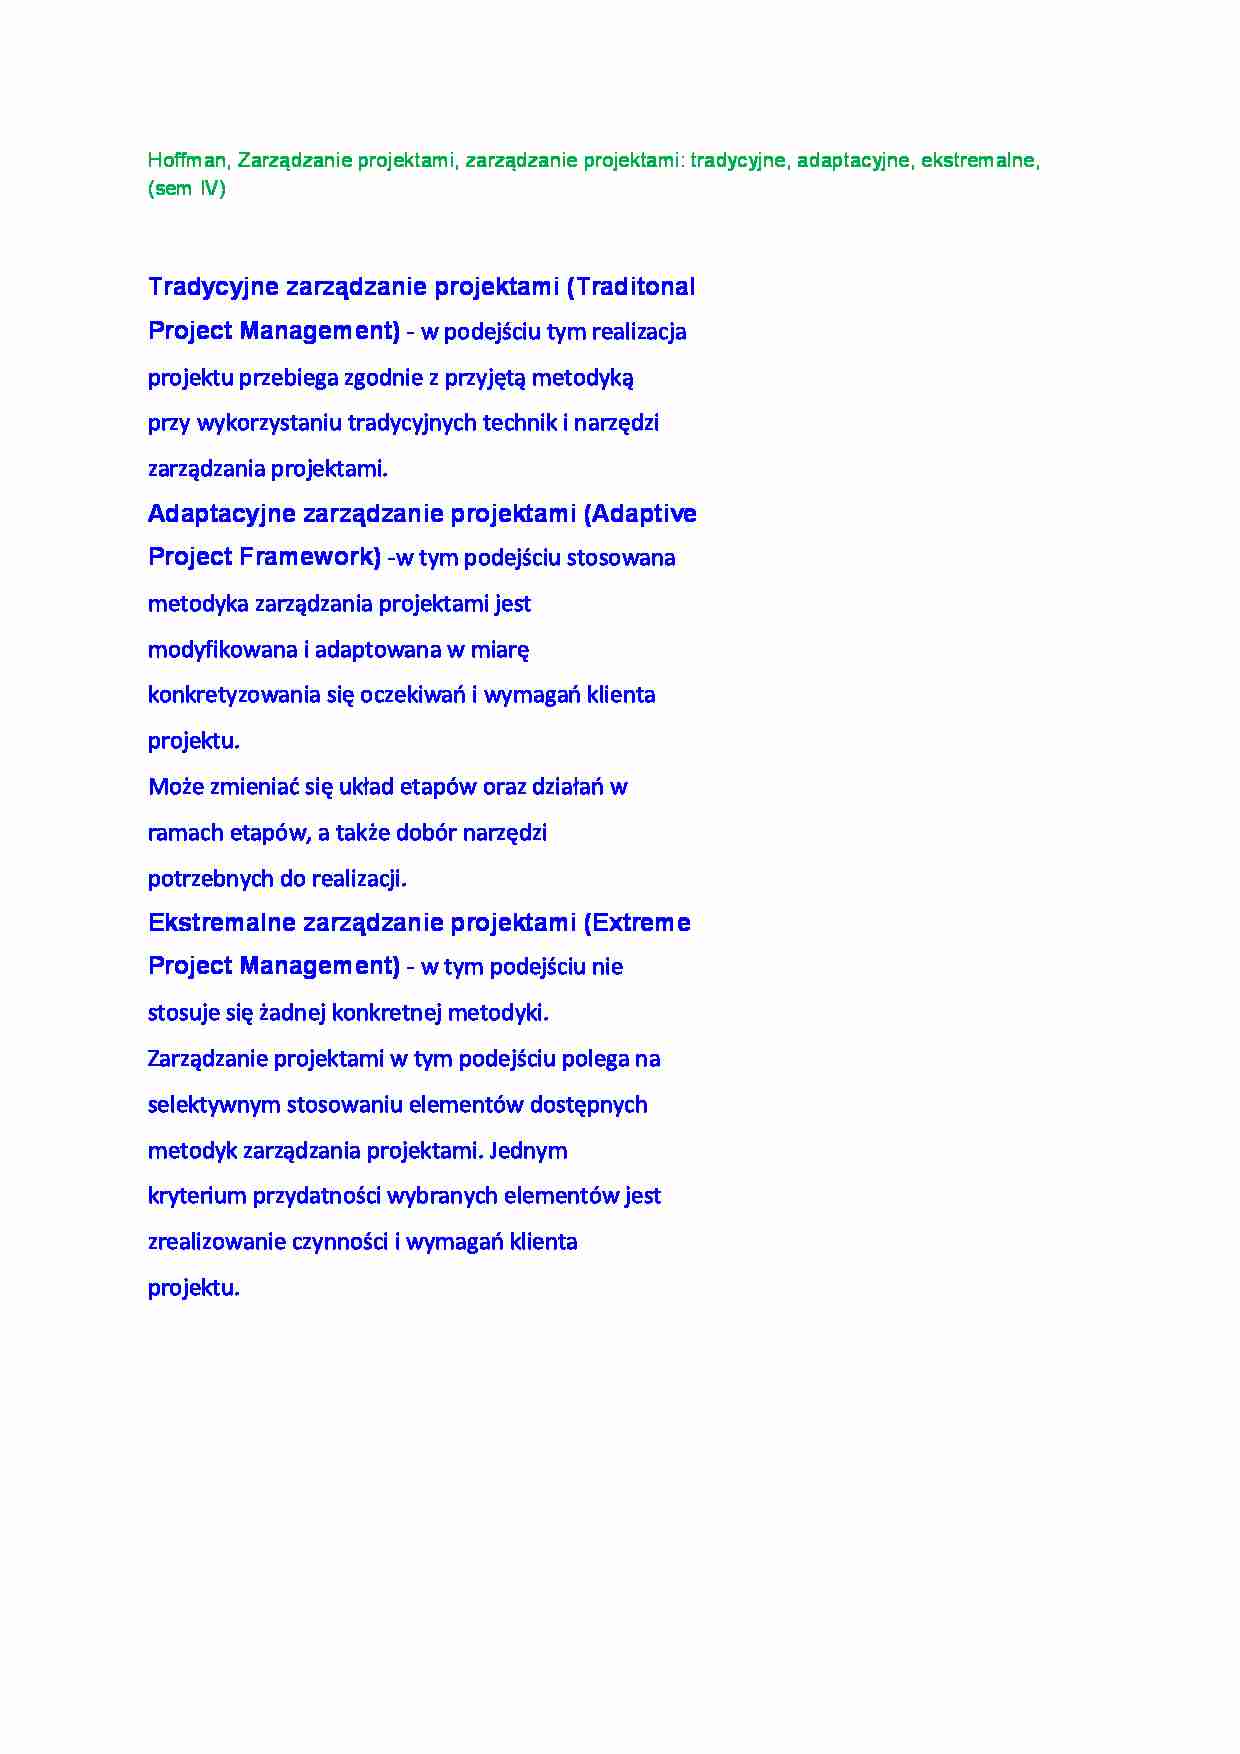 Zarządzanie projektami tradycyjne, adaptacyjne, ekstremalne, (sem IV) - strona 1